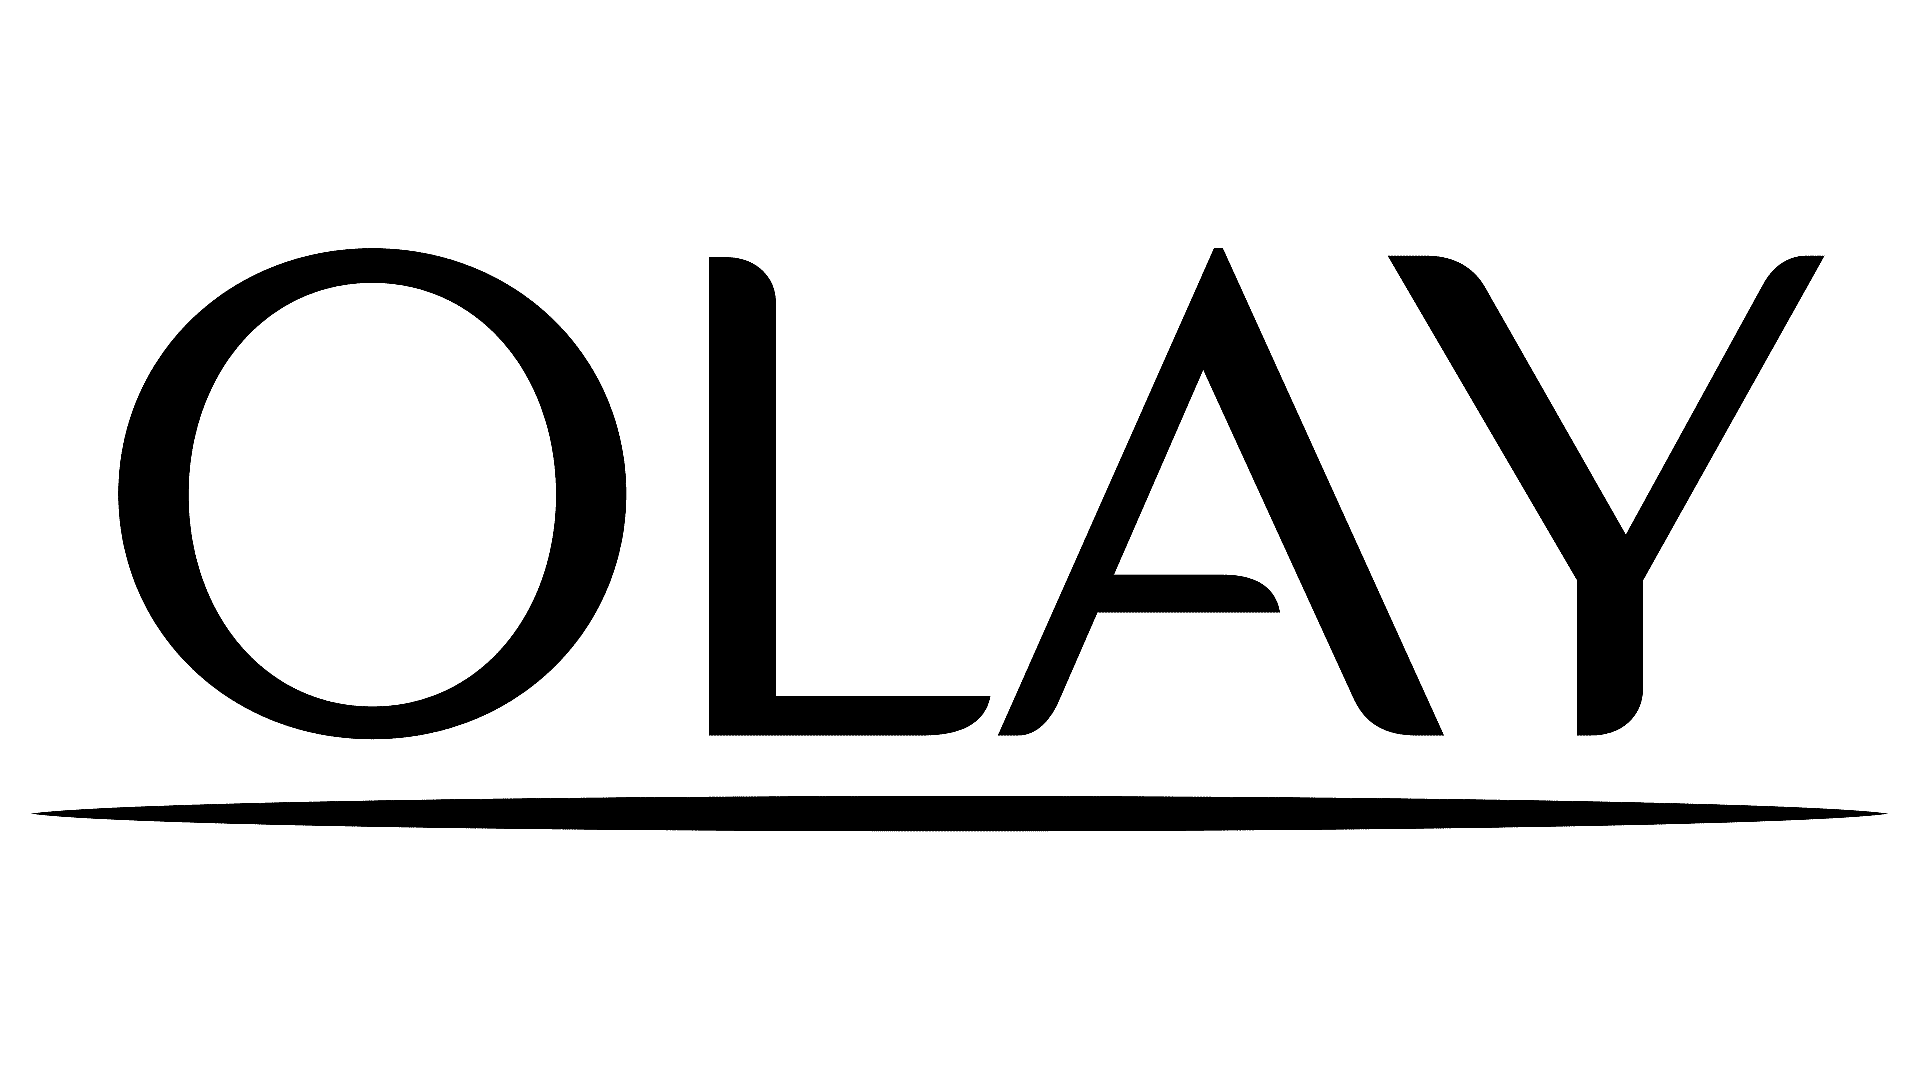 Brand: Olay